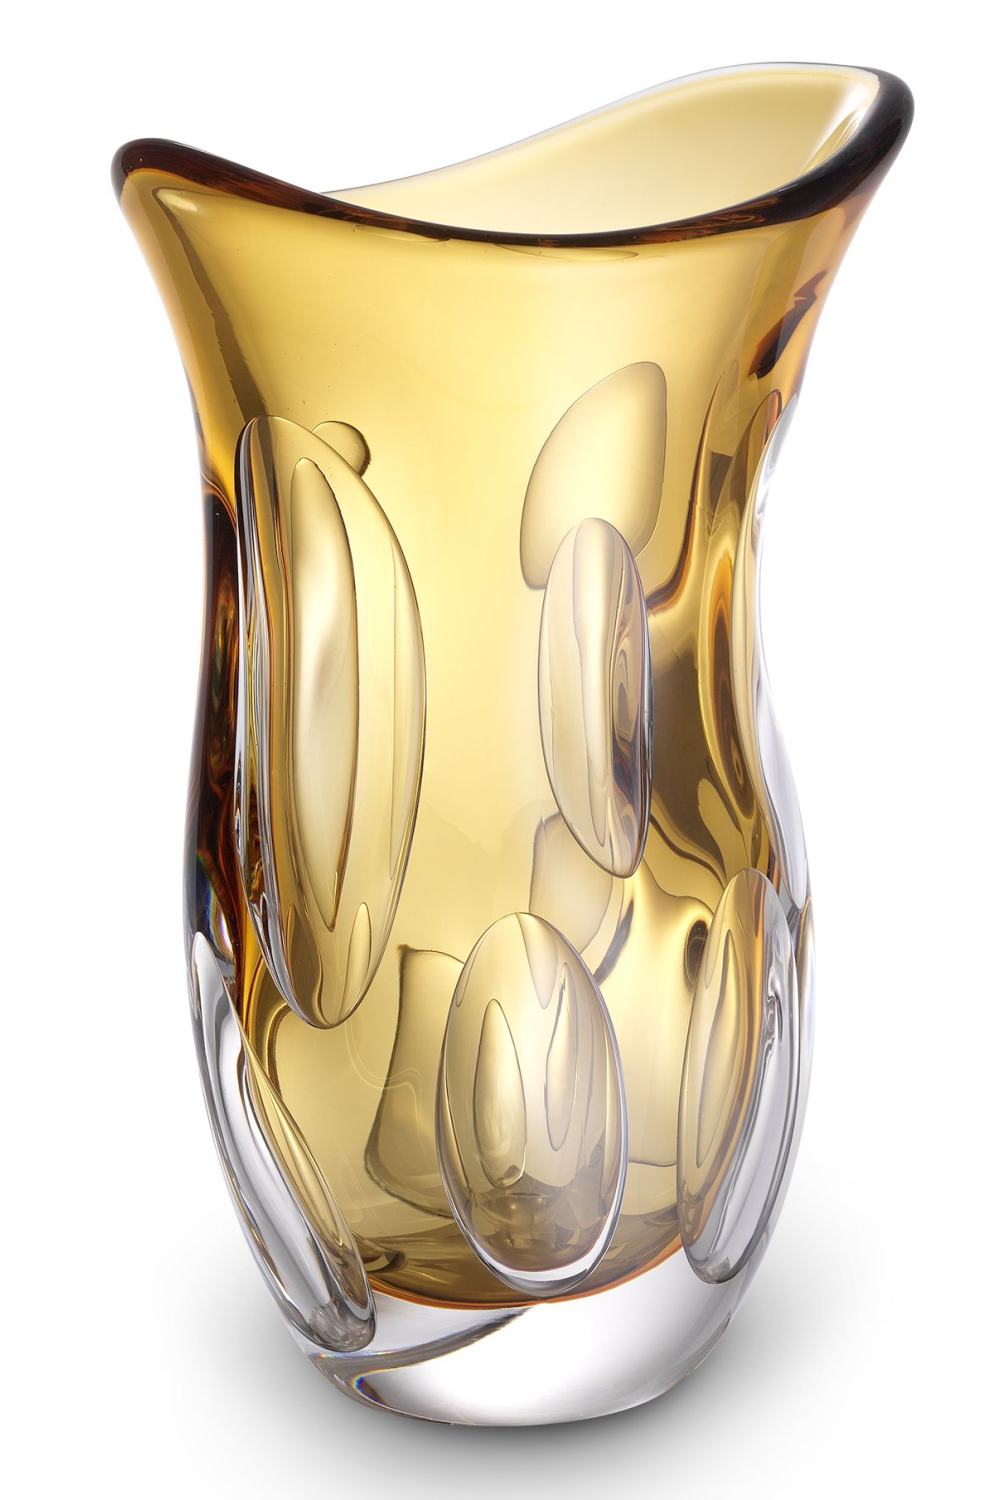 Orange Handblown Glass Vase | Eichholtz Matteo S | Oroa.com